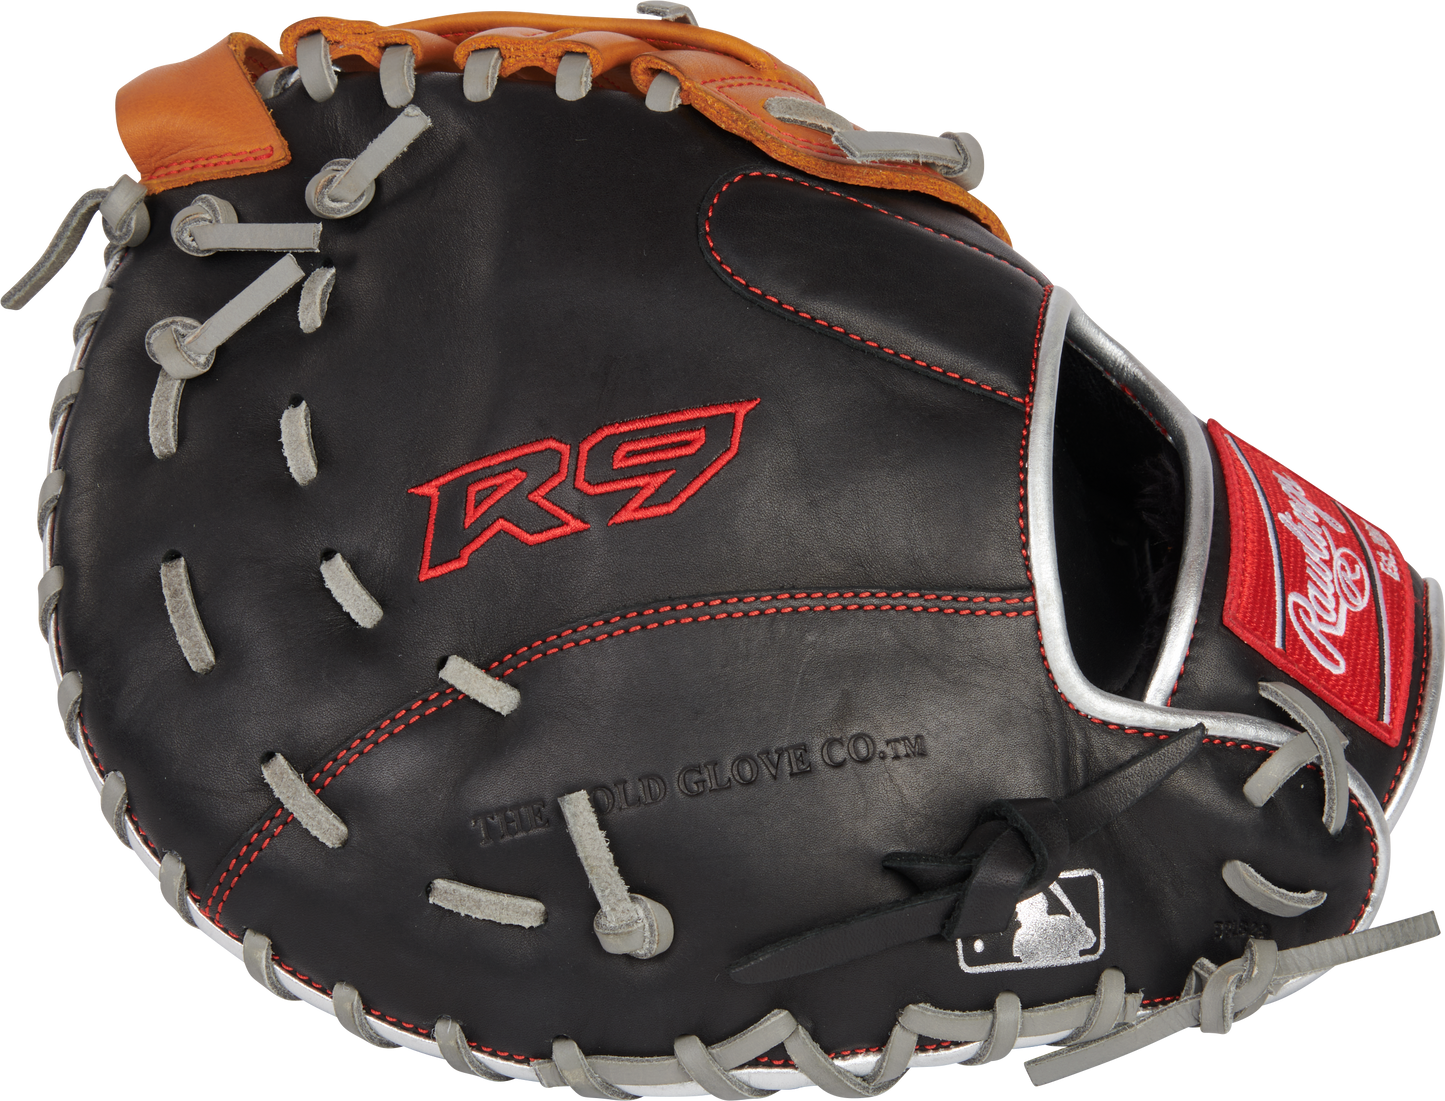 Rawlings R9 ContoUR 12.00" Baseball Glove: R9FMU-17BT